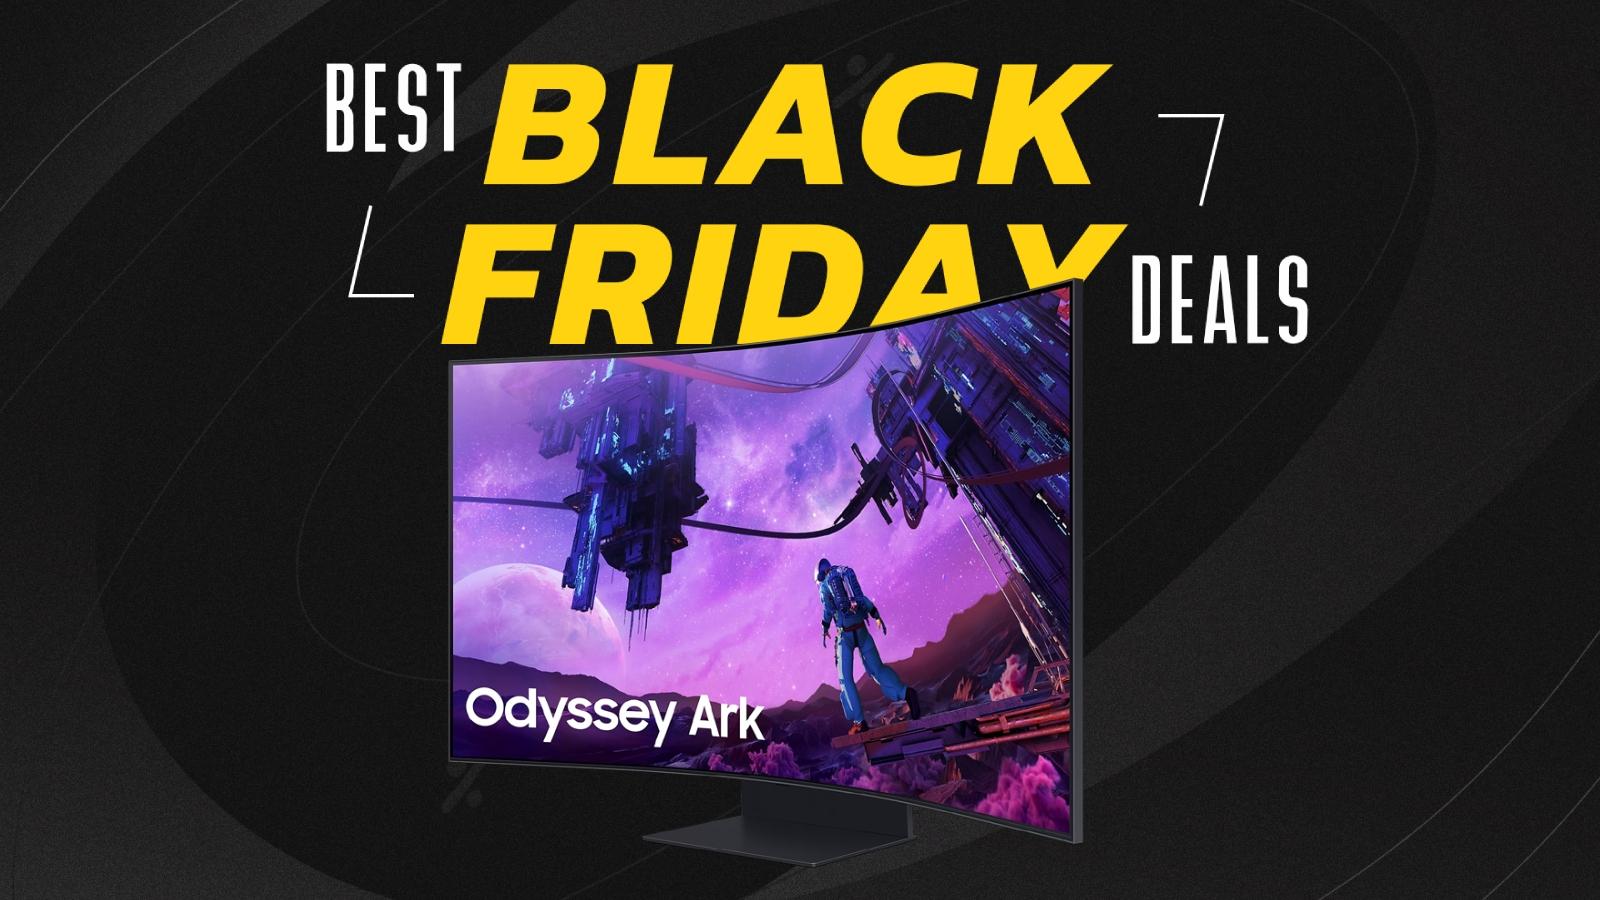 Odyssey Ark monitor on Black Friday background